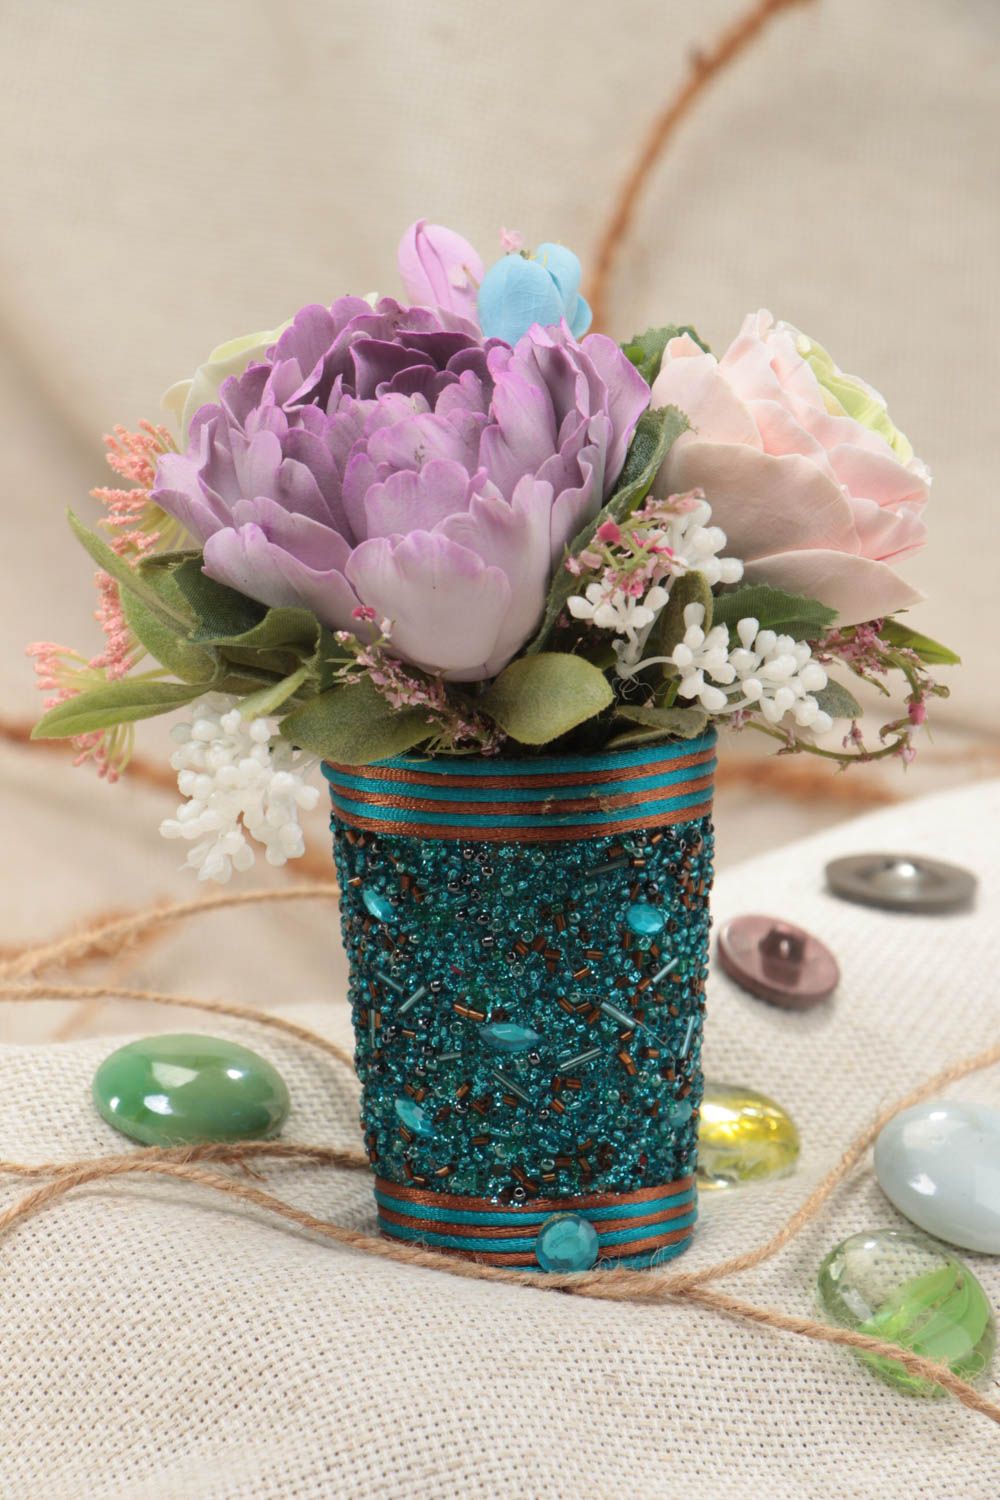 Цветы из полимерной глины ручной работы красивые пионы и розы оригинальные для декора фото 1